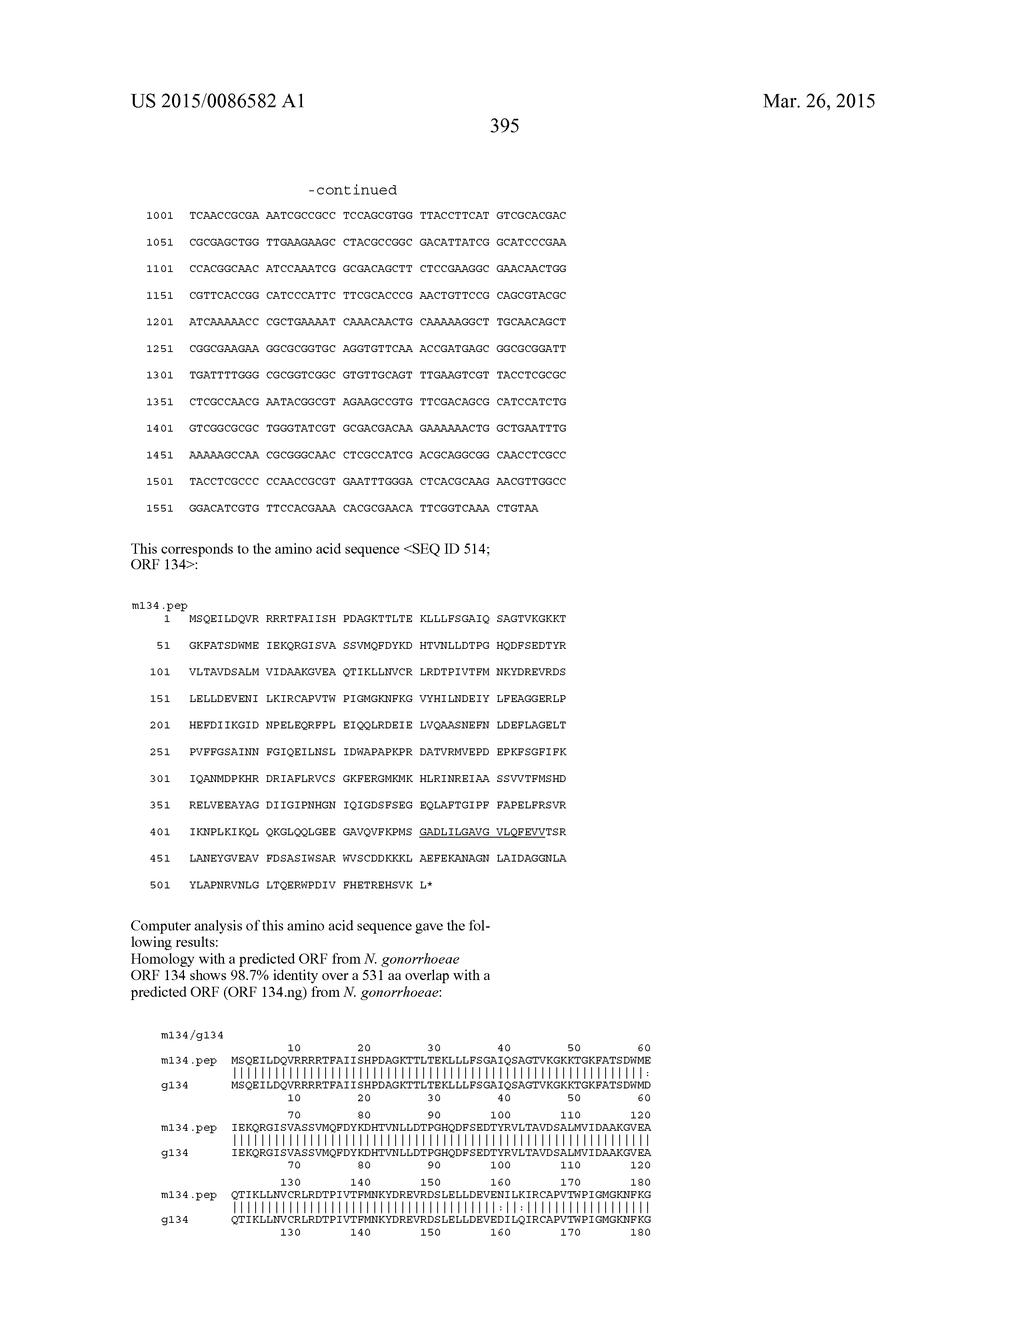 NEISSERIA MENINGITIDIS ANTIGENS AND COMPOSITIONS - diagram, schematic, and image 427